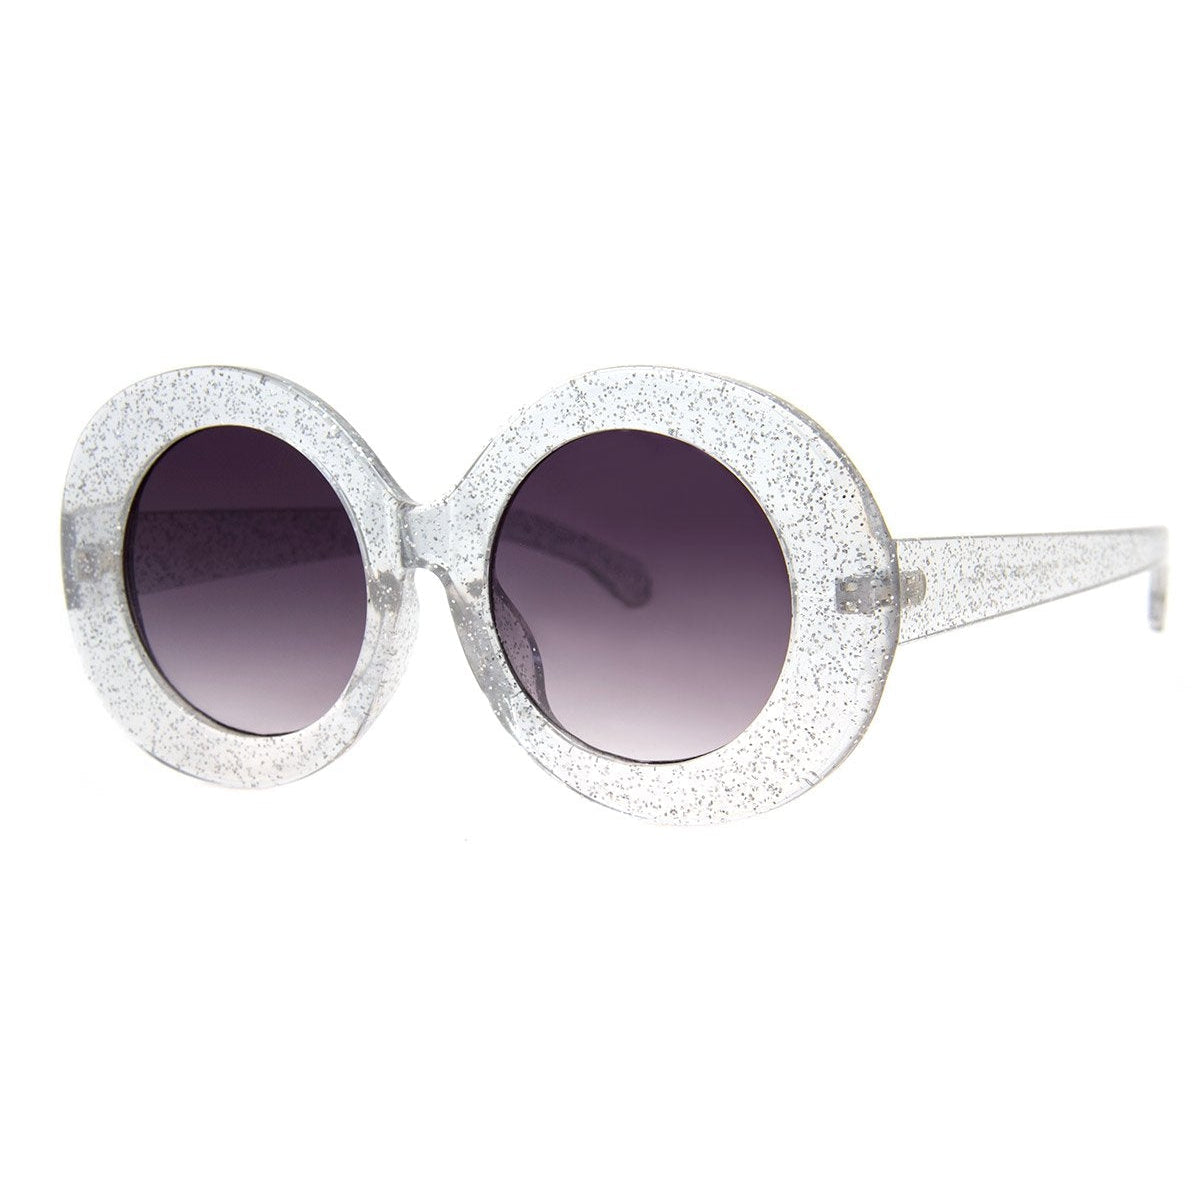 Bubbles Sunglasses - Crystal Glitter